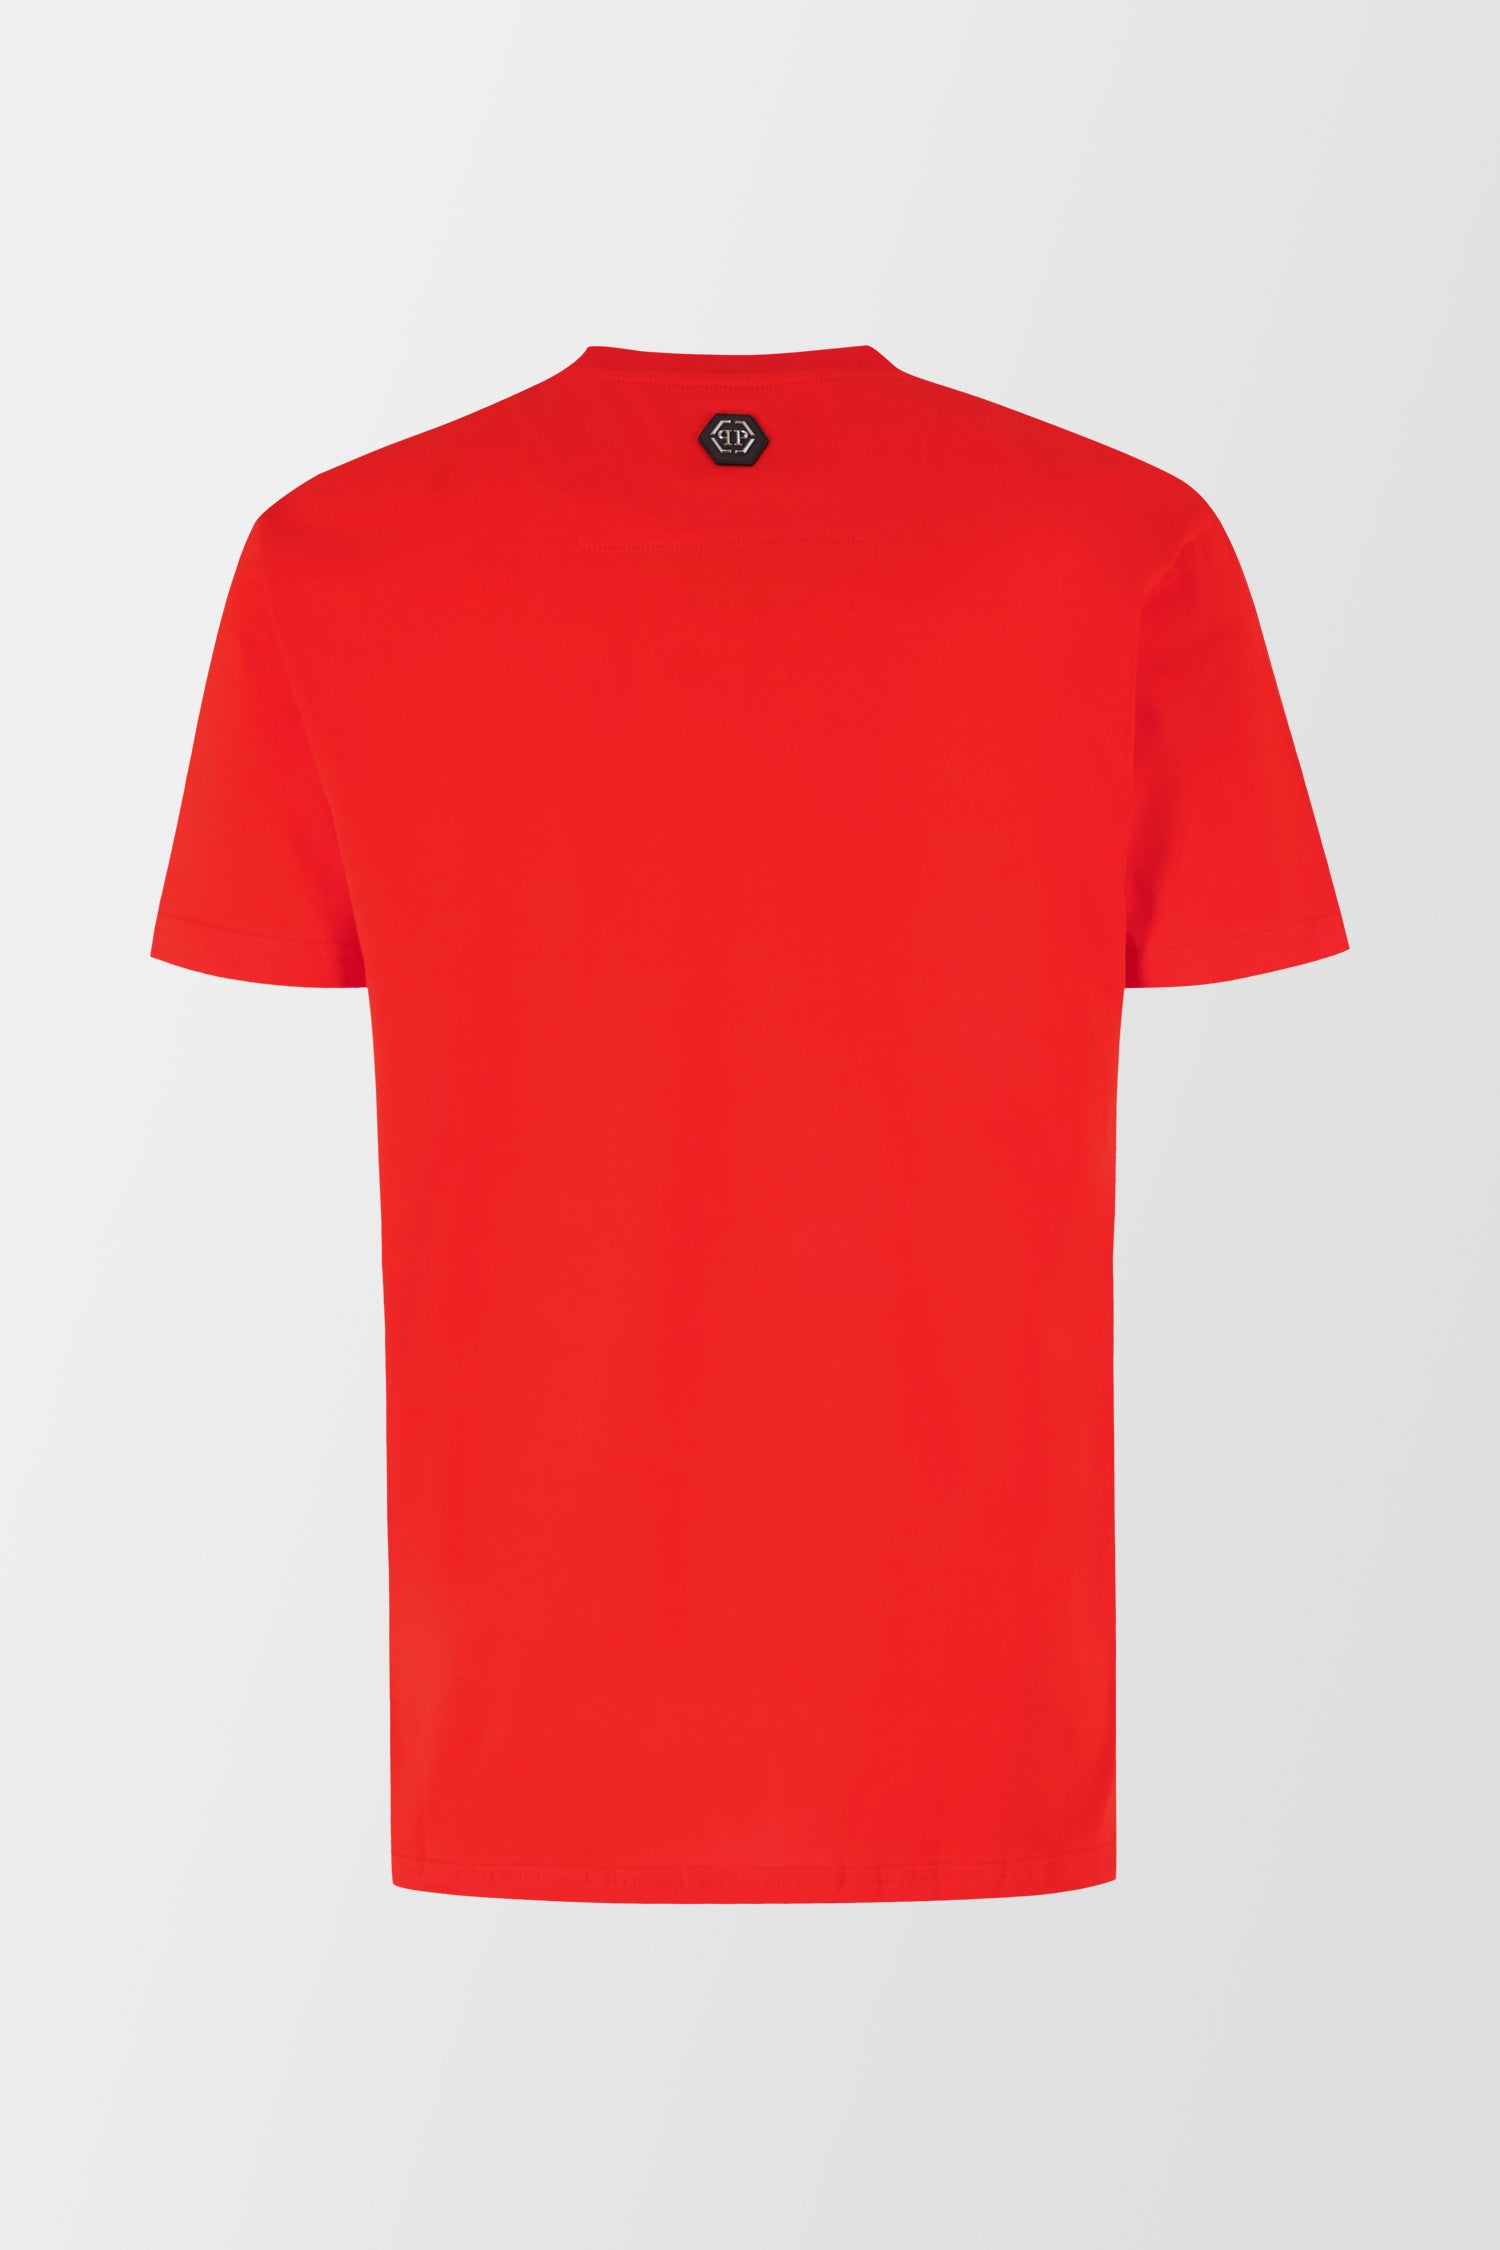 Philipp Plein Red Round Neck SS Monster T-Shirt